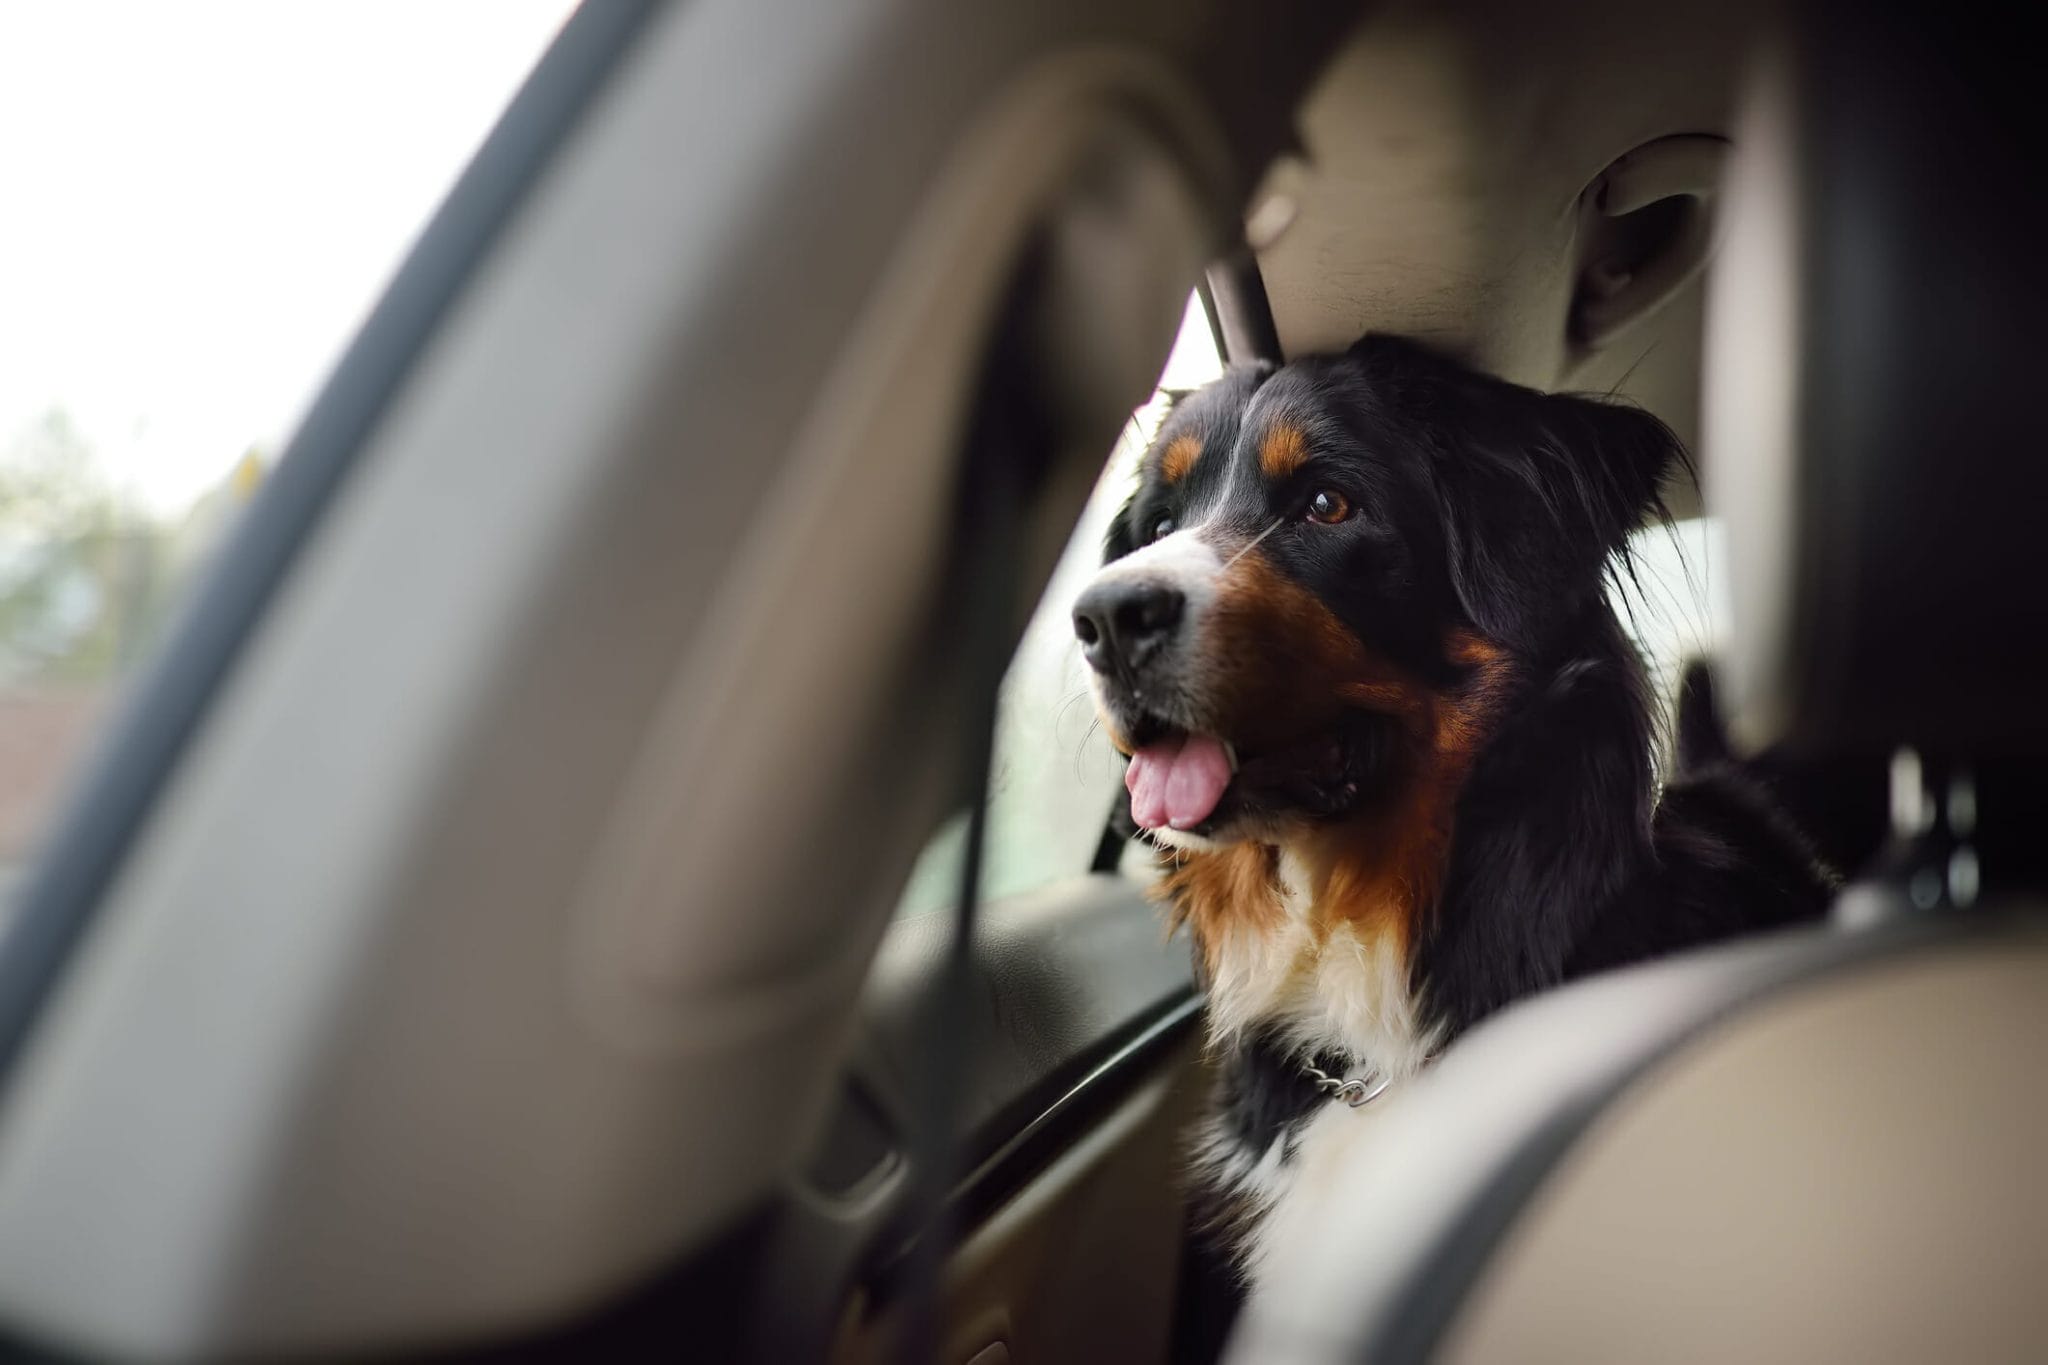 Best car door protector for dogs